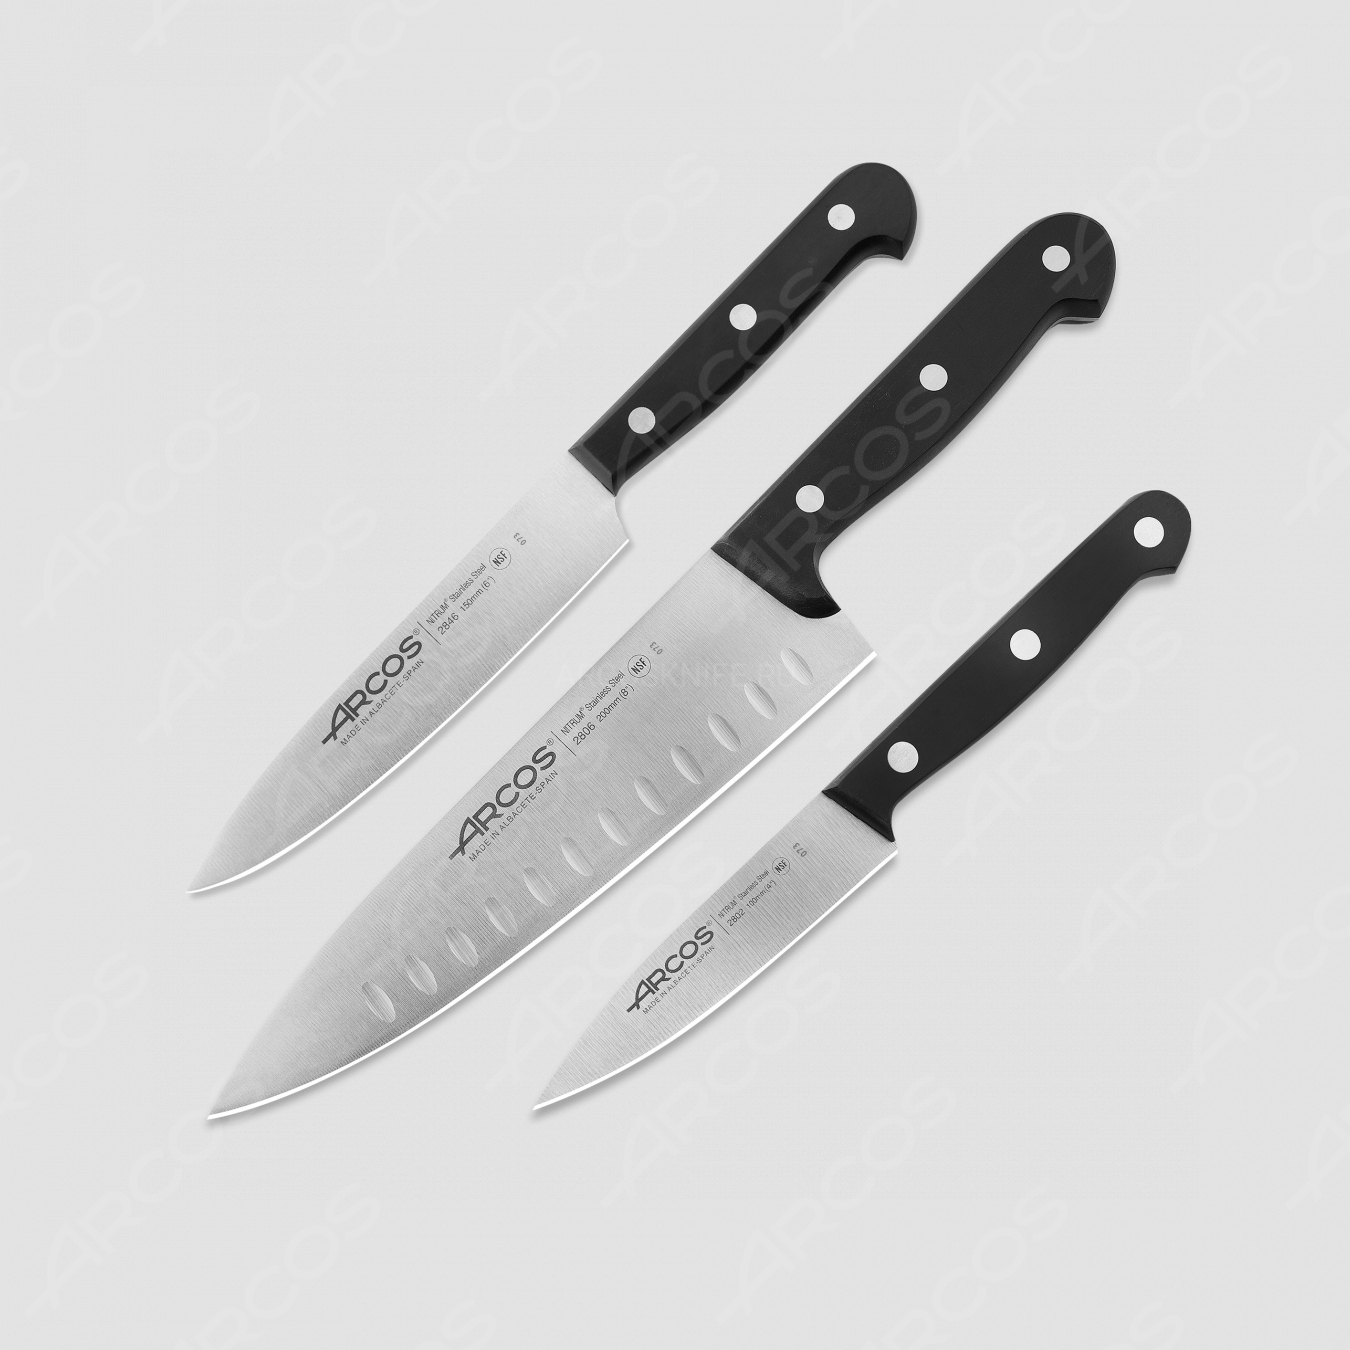 Набор кухонных ножей, 3 шт (10 см, 15 см, 20 см), серия Universal, ARCOS, Испания